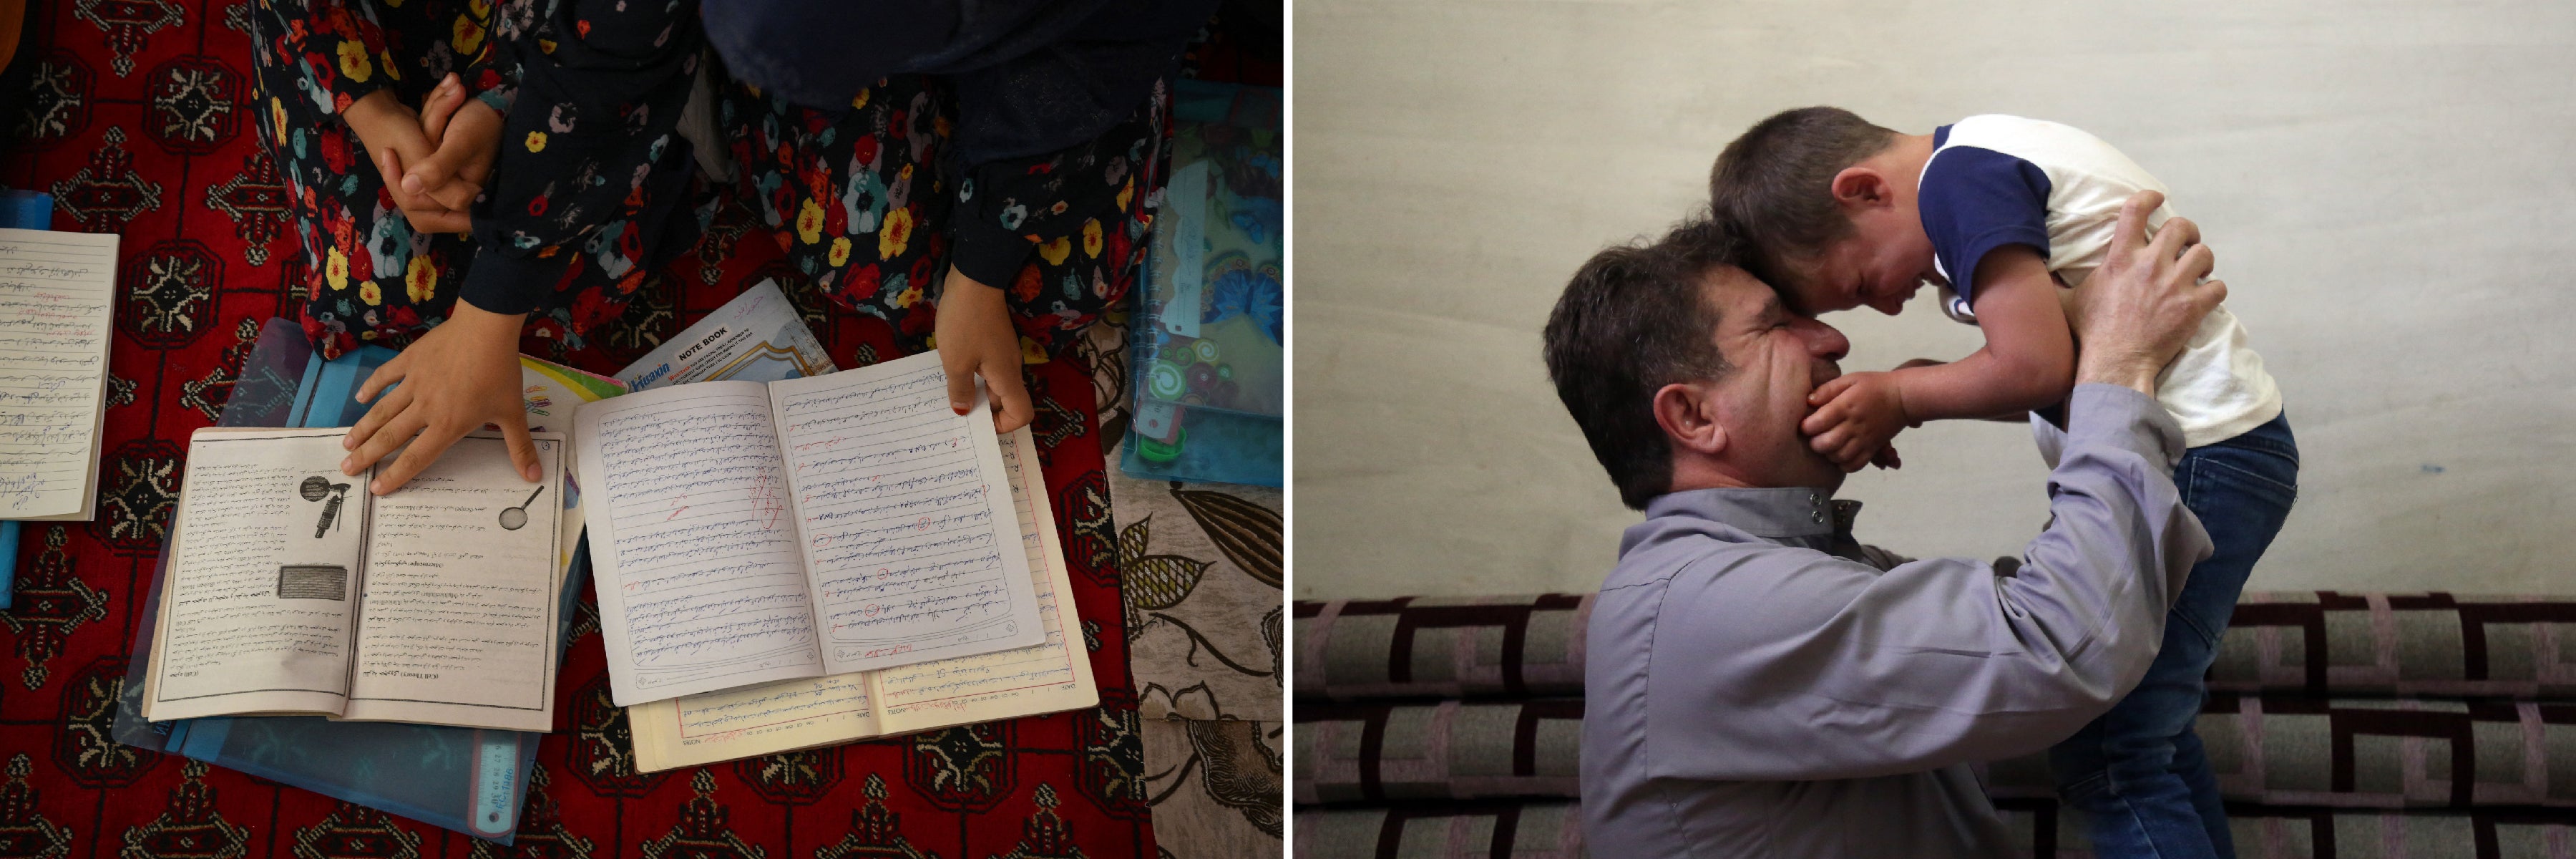 Слева: Девочки учатся в секретной школе в неизвестном месте в Афганистане, 25 июля 2022 года. © 2022 Даниэль Лил / AFP Справа: Ибрагим, 5-летний мальчик с аутизмом, на руках у своего отца в Идлибе, Сирия, июнь 2022 год. Дети с ограниченными возможностями, оказавшиеся в сирийской войне, подвергаются большему риску причинения вреда и не имеют доступа к базовому медицинскому обслуживанию, образованию, гуманитарной помощи, вспомогательным устройствам и психосоциальной поддержке. © Хьюман Райтс Вотч 2022 г.